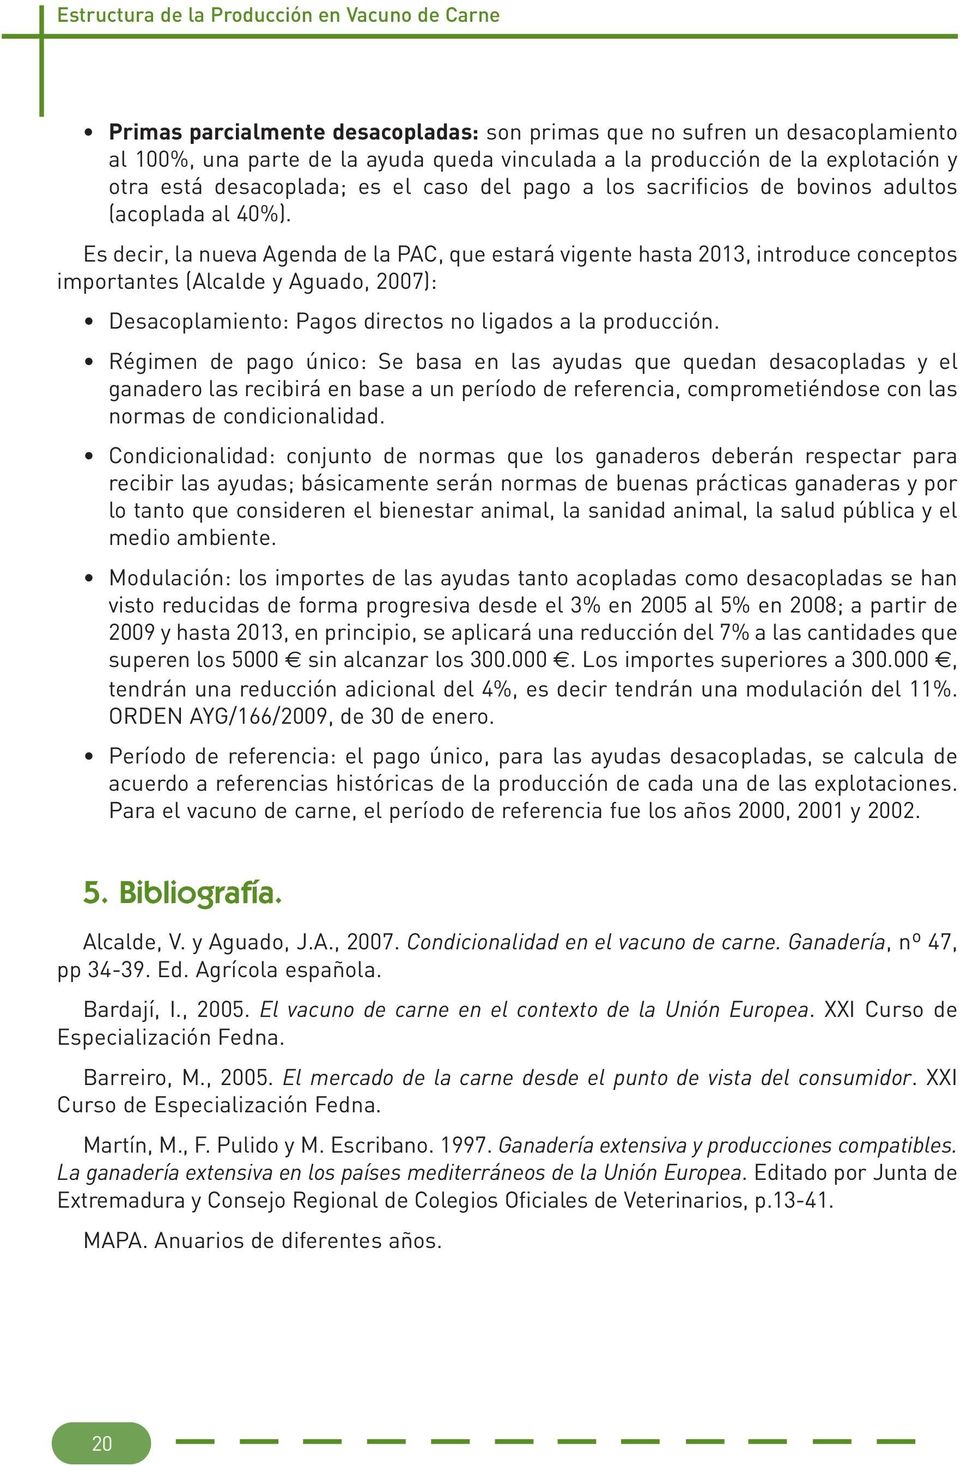 Es decir, la nueva Agenda de la PAC, que estará vigente hasta 2013, introduce conceptos importantes (Alcalde y Aguado, 2007): Desacoplamiento: Pagos directos no ligados a la producción.